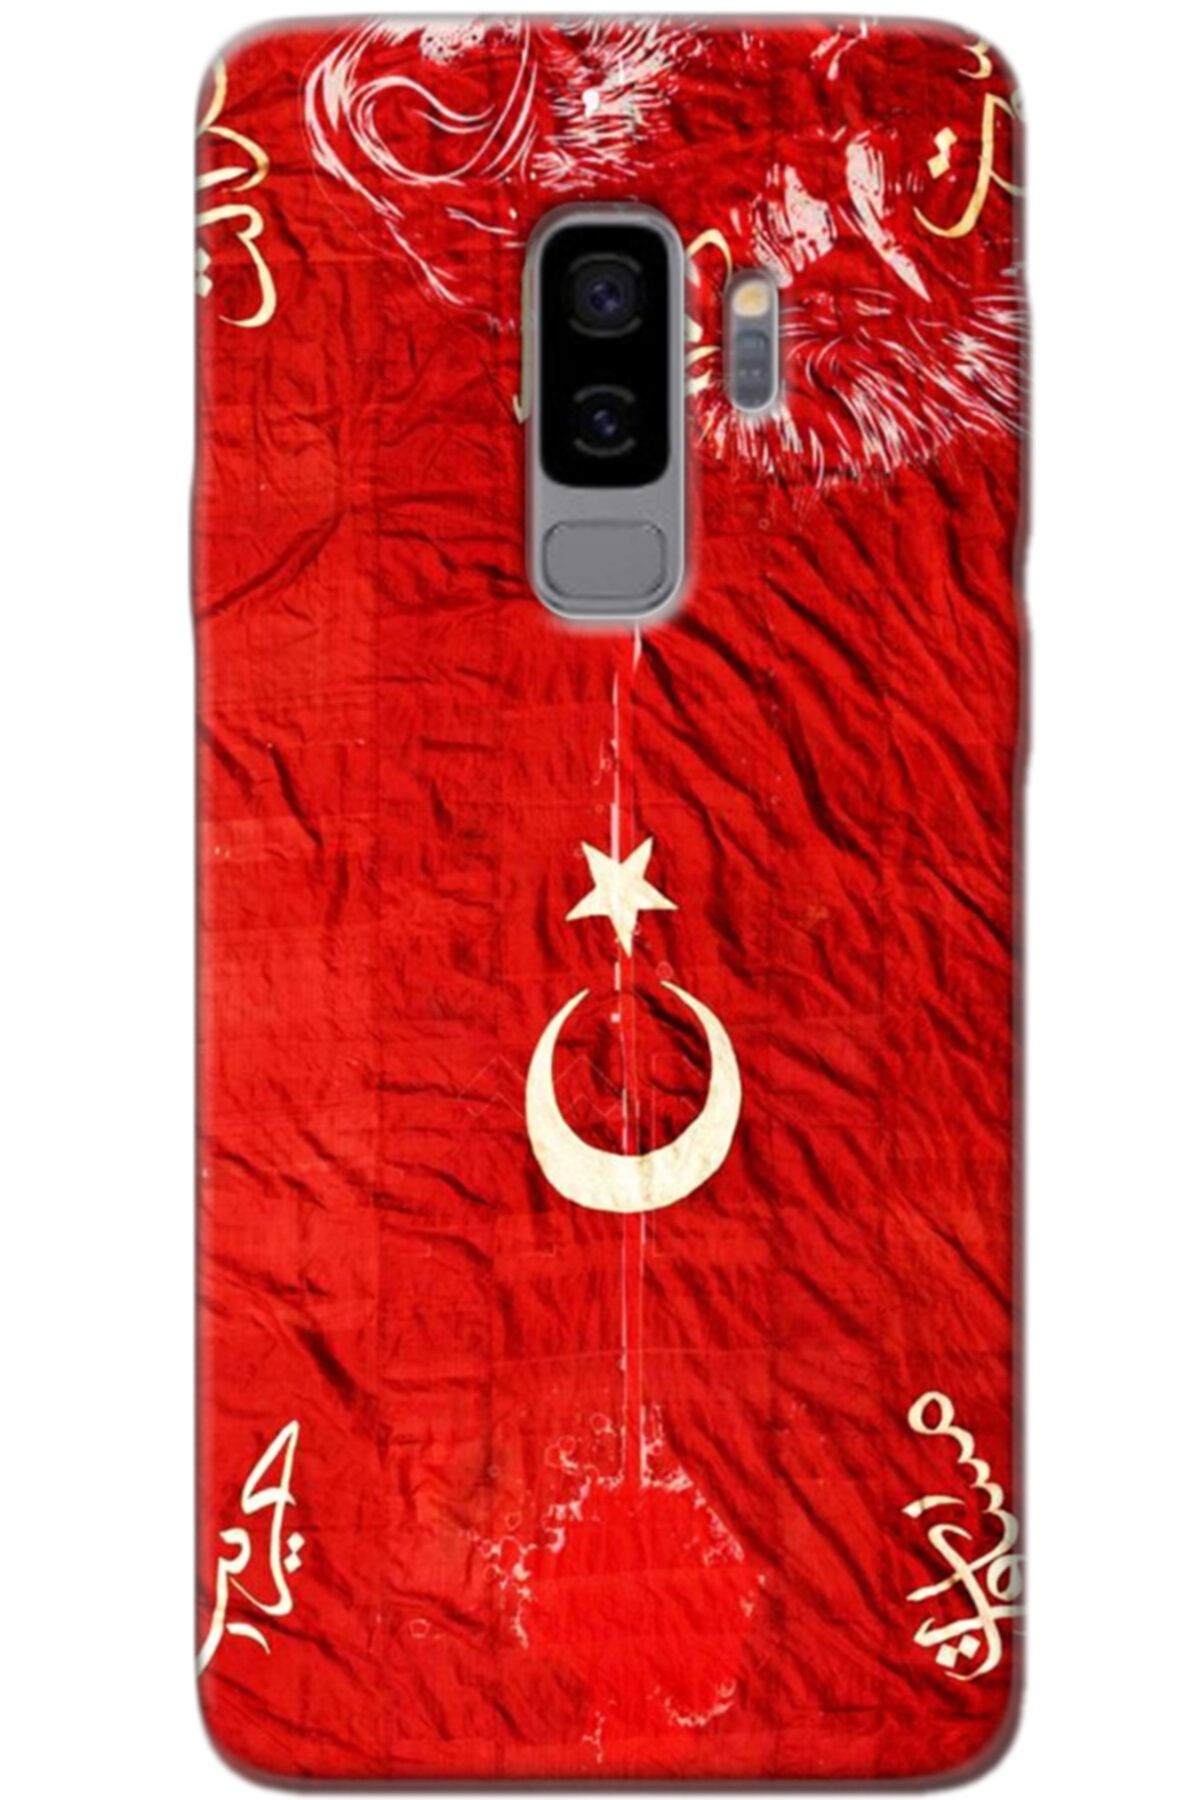 Turkiyecepaksesuar Samsung Galaxy S9 Plus Kılıf Silikon Baskılı Desenli Arka Kapak